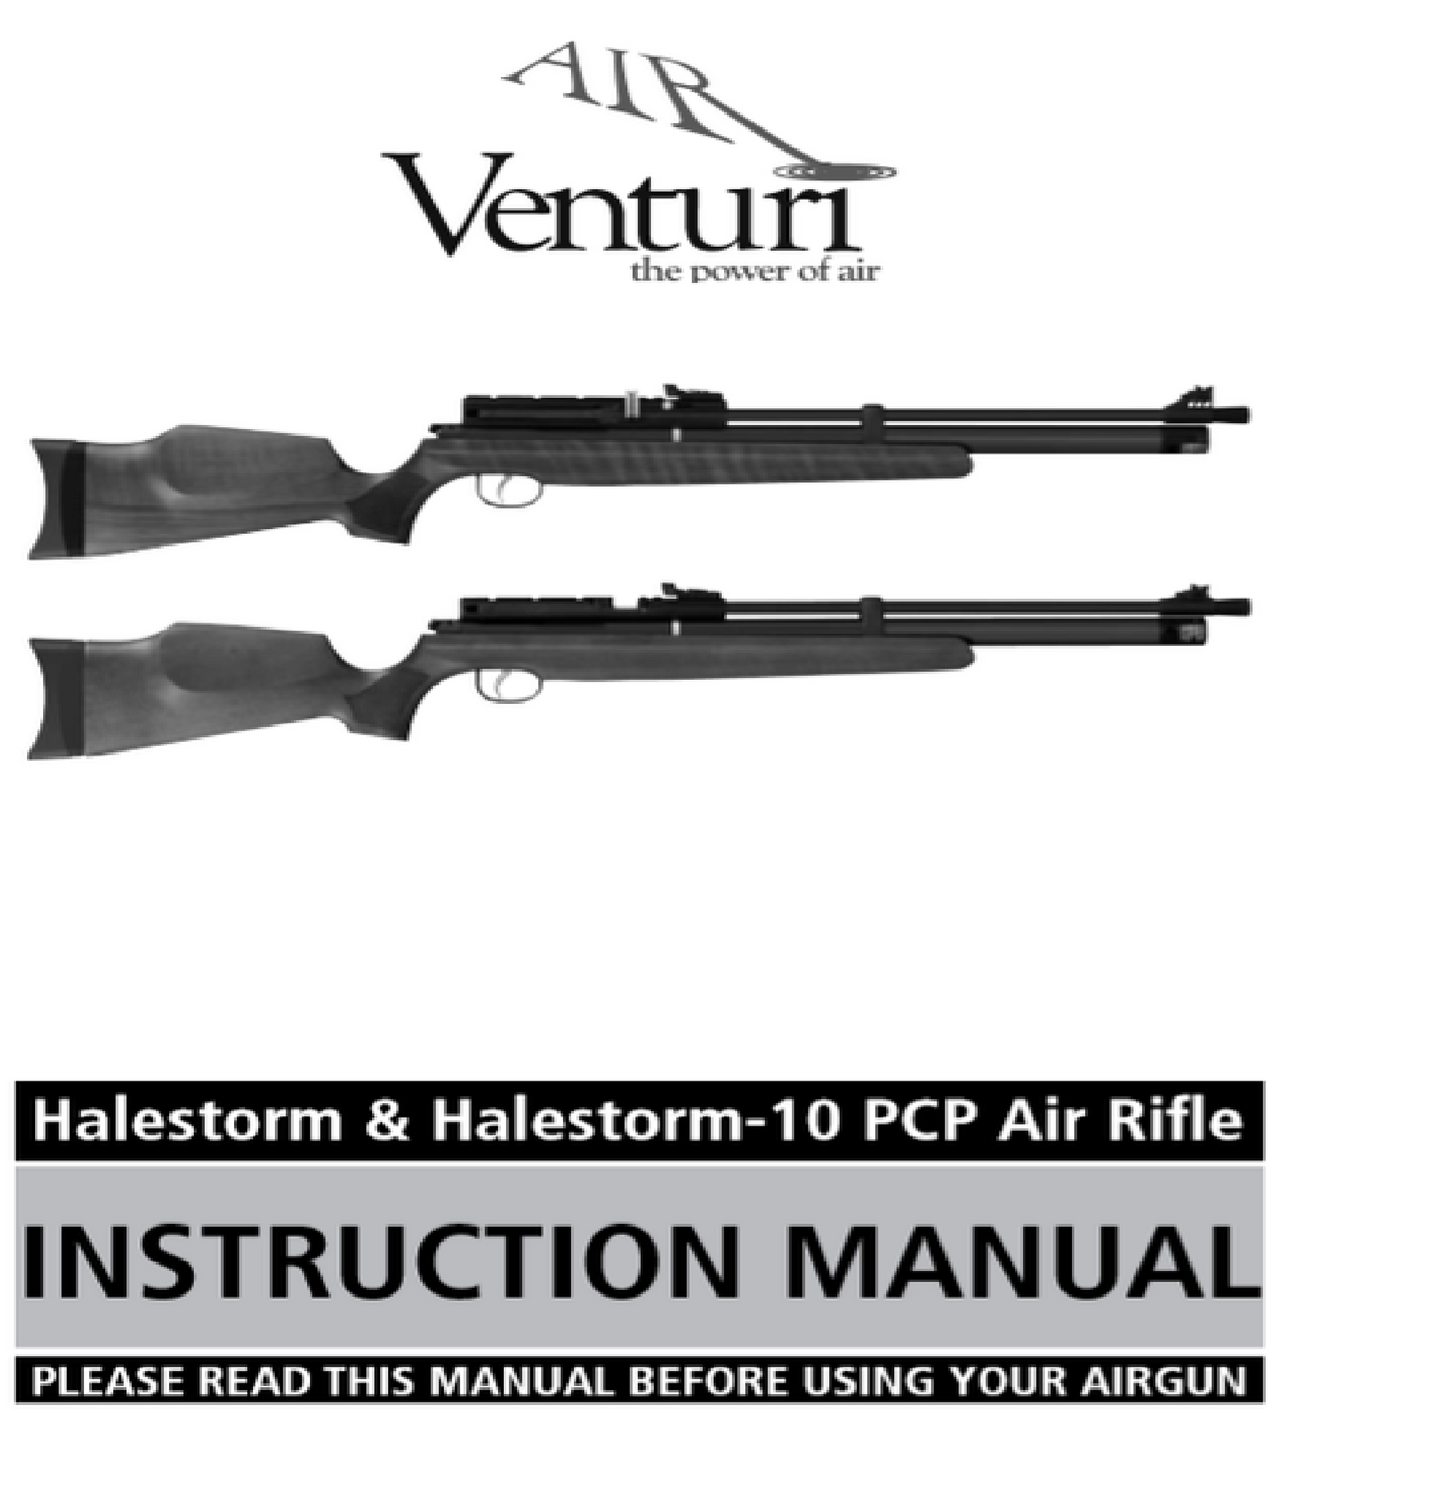 Air Venturi Halestorm & Halestorm-10 PCP Air Rifle Air Rifle Gun Owners Manual